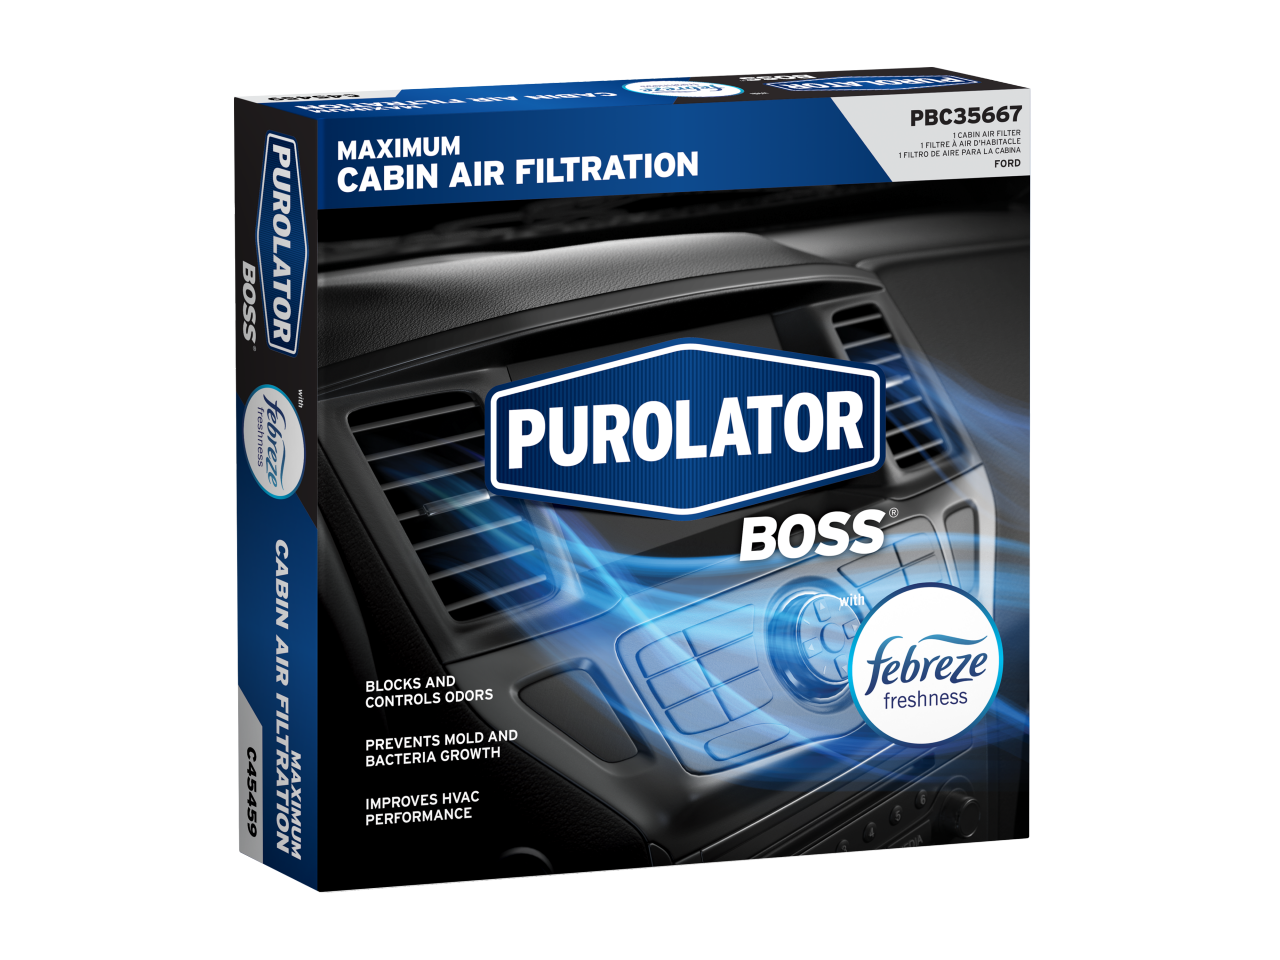 Les filtres à air d’habitacle PurolatorBOSS® Premium avec Febreze Freshness bloquent et contrôlent les odeurs tout en empêchant la croissance des moisissures et des bactéries.